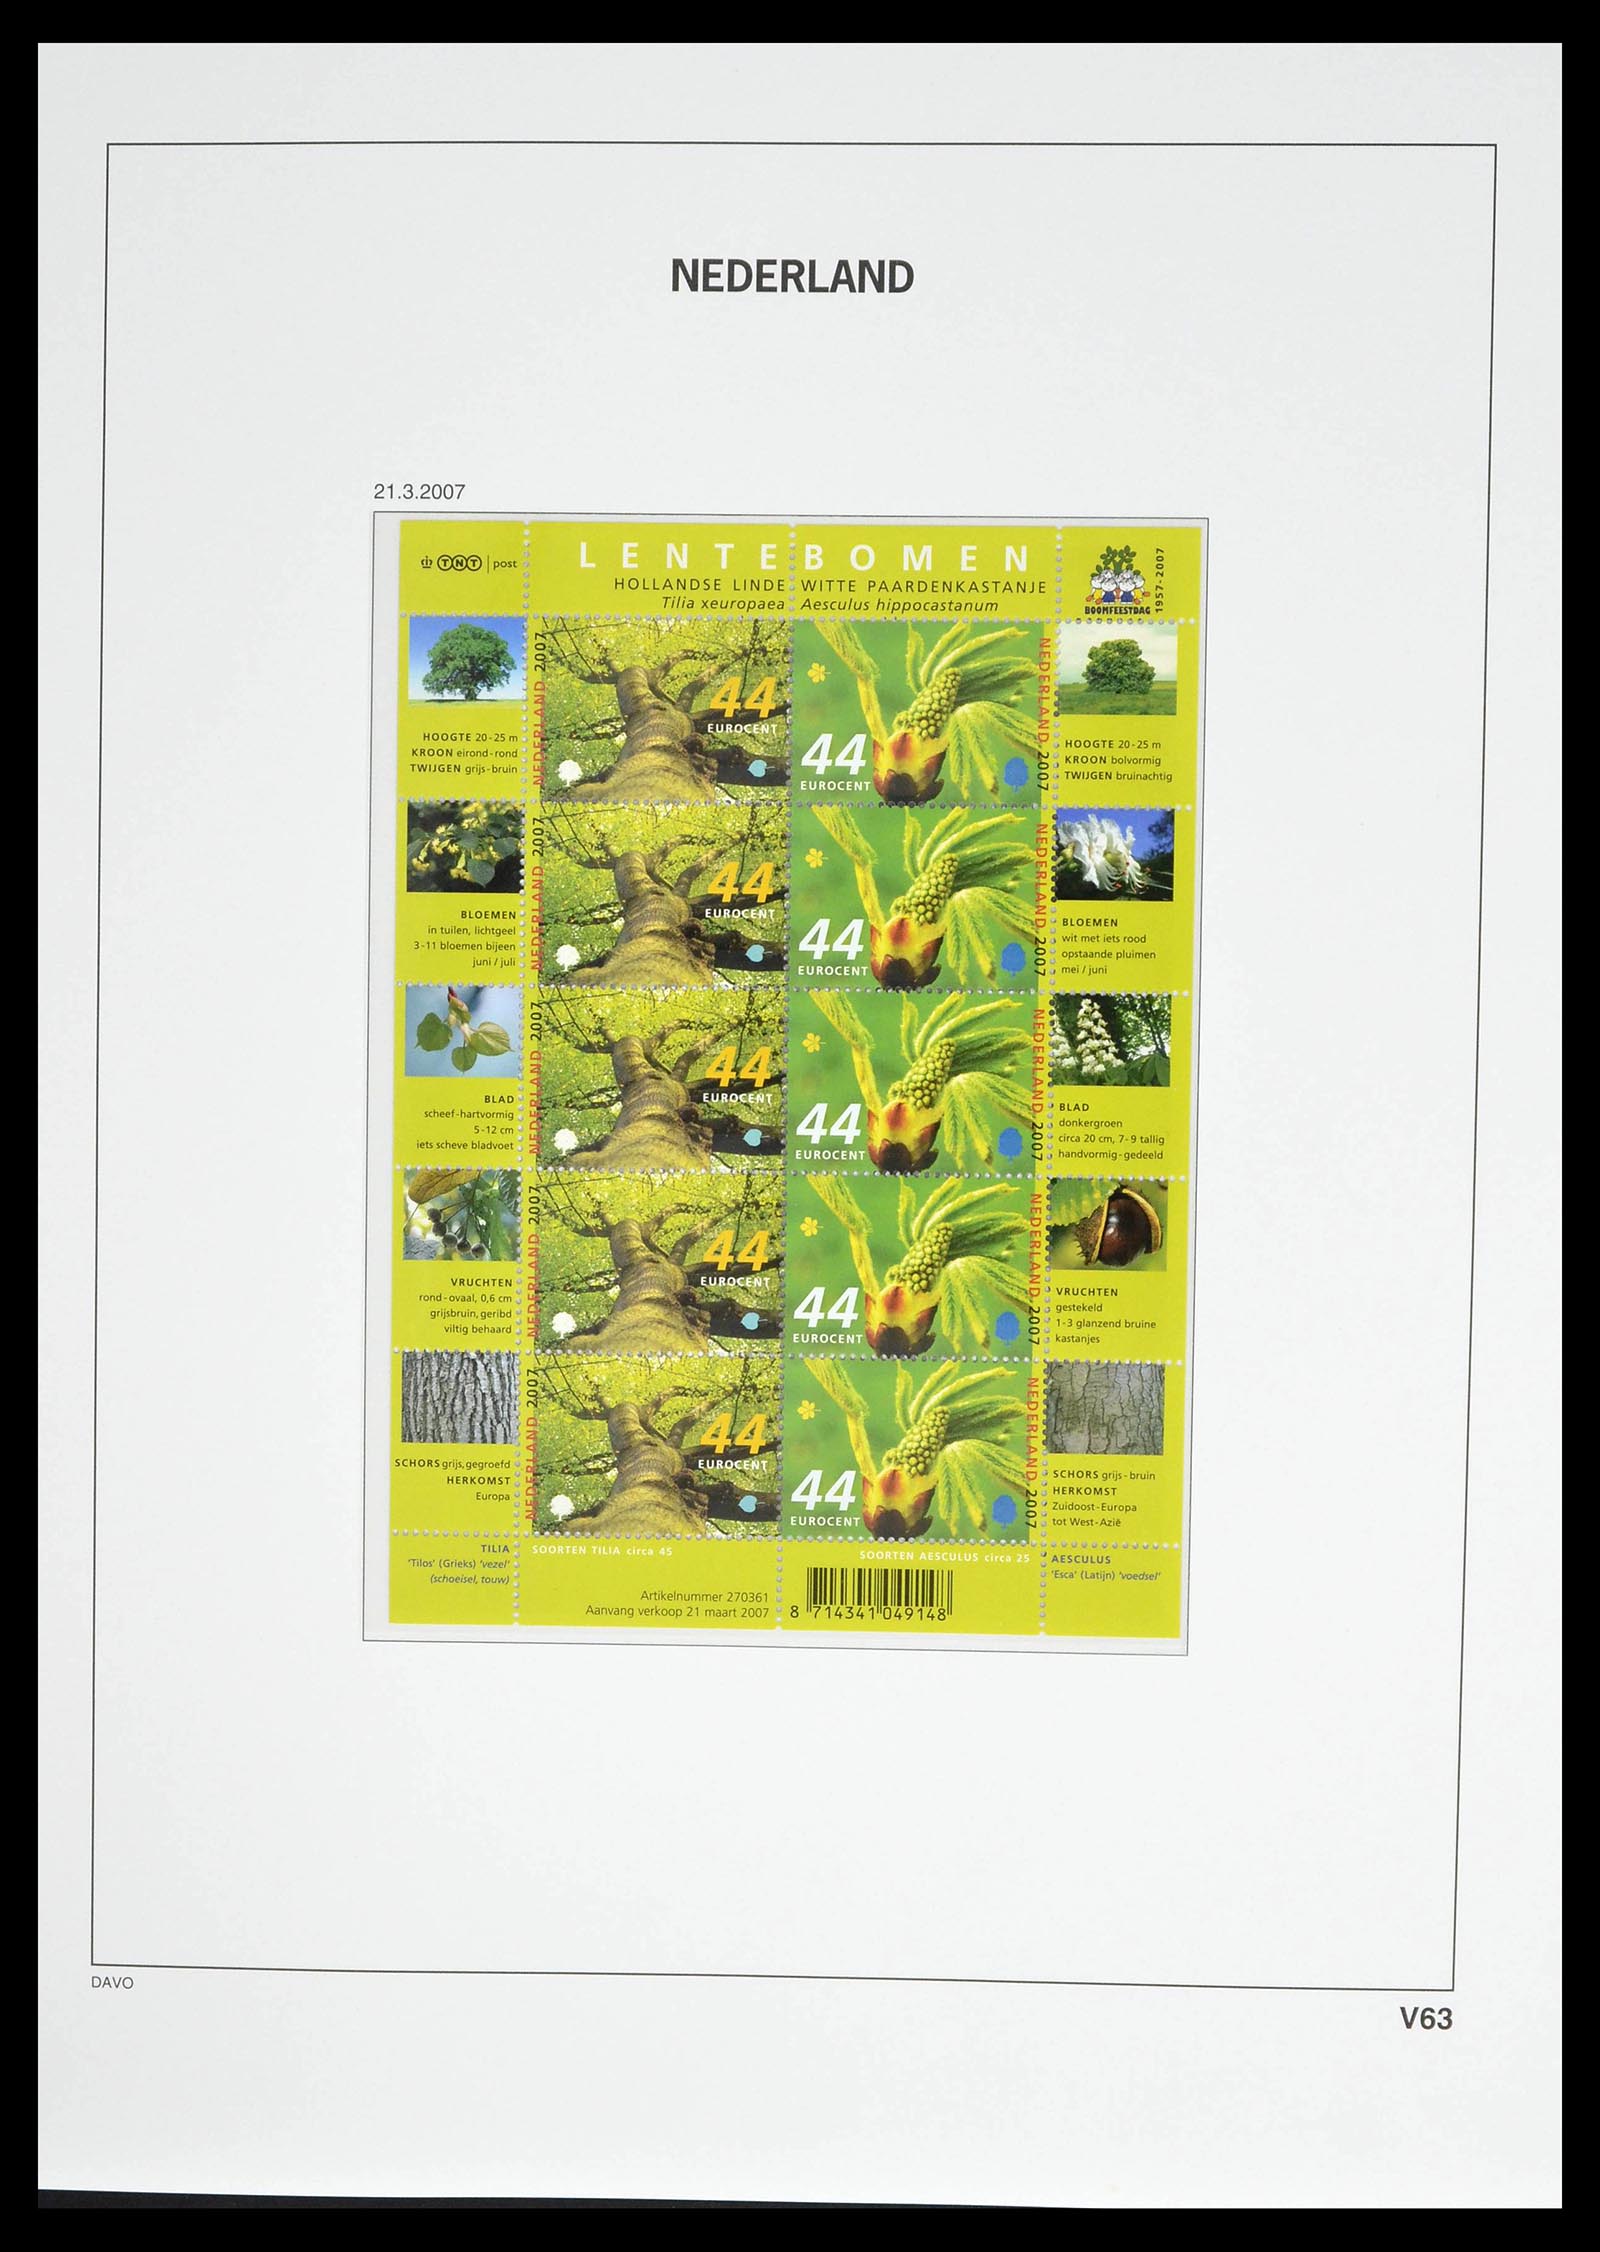 39134 0077 - Stamp collection 39134 Netherlands sheetlets 1992-2019!